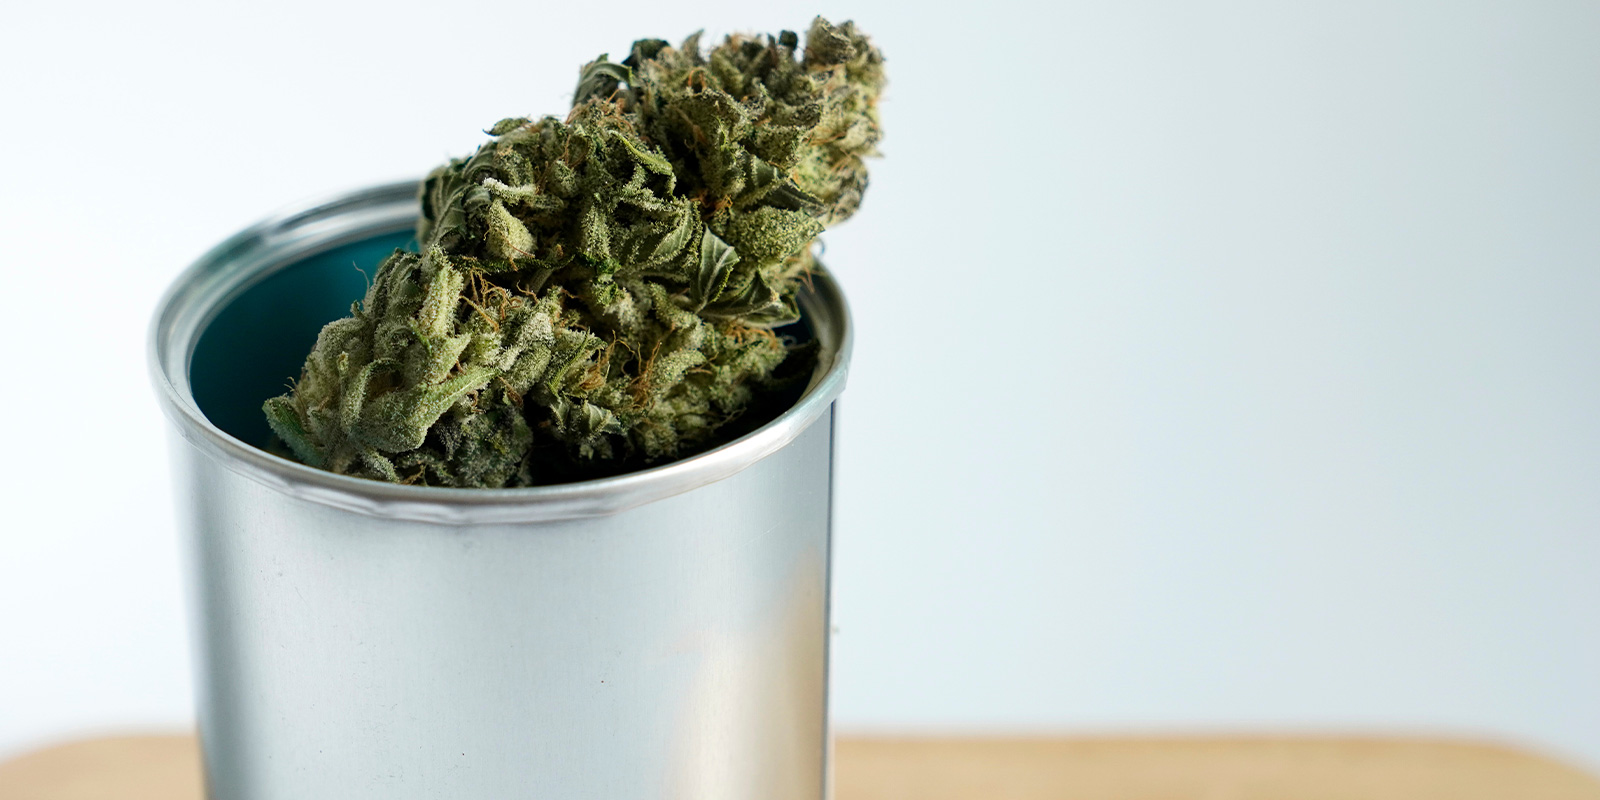 cannabis flower in a metal box